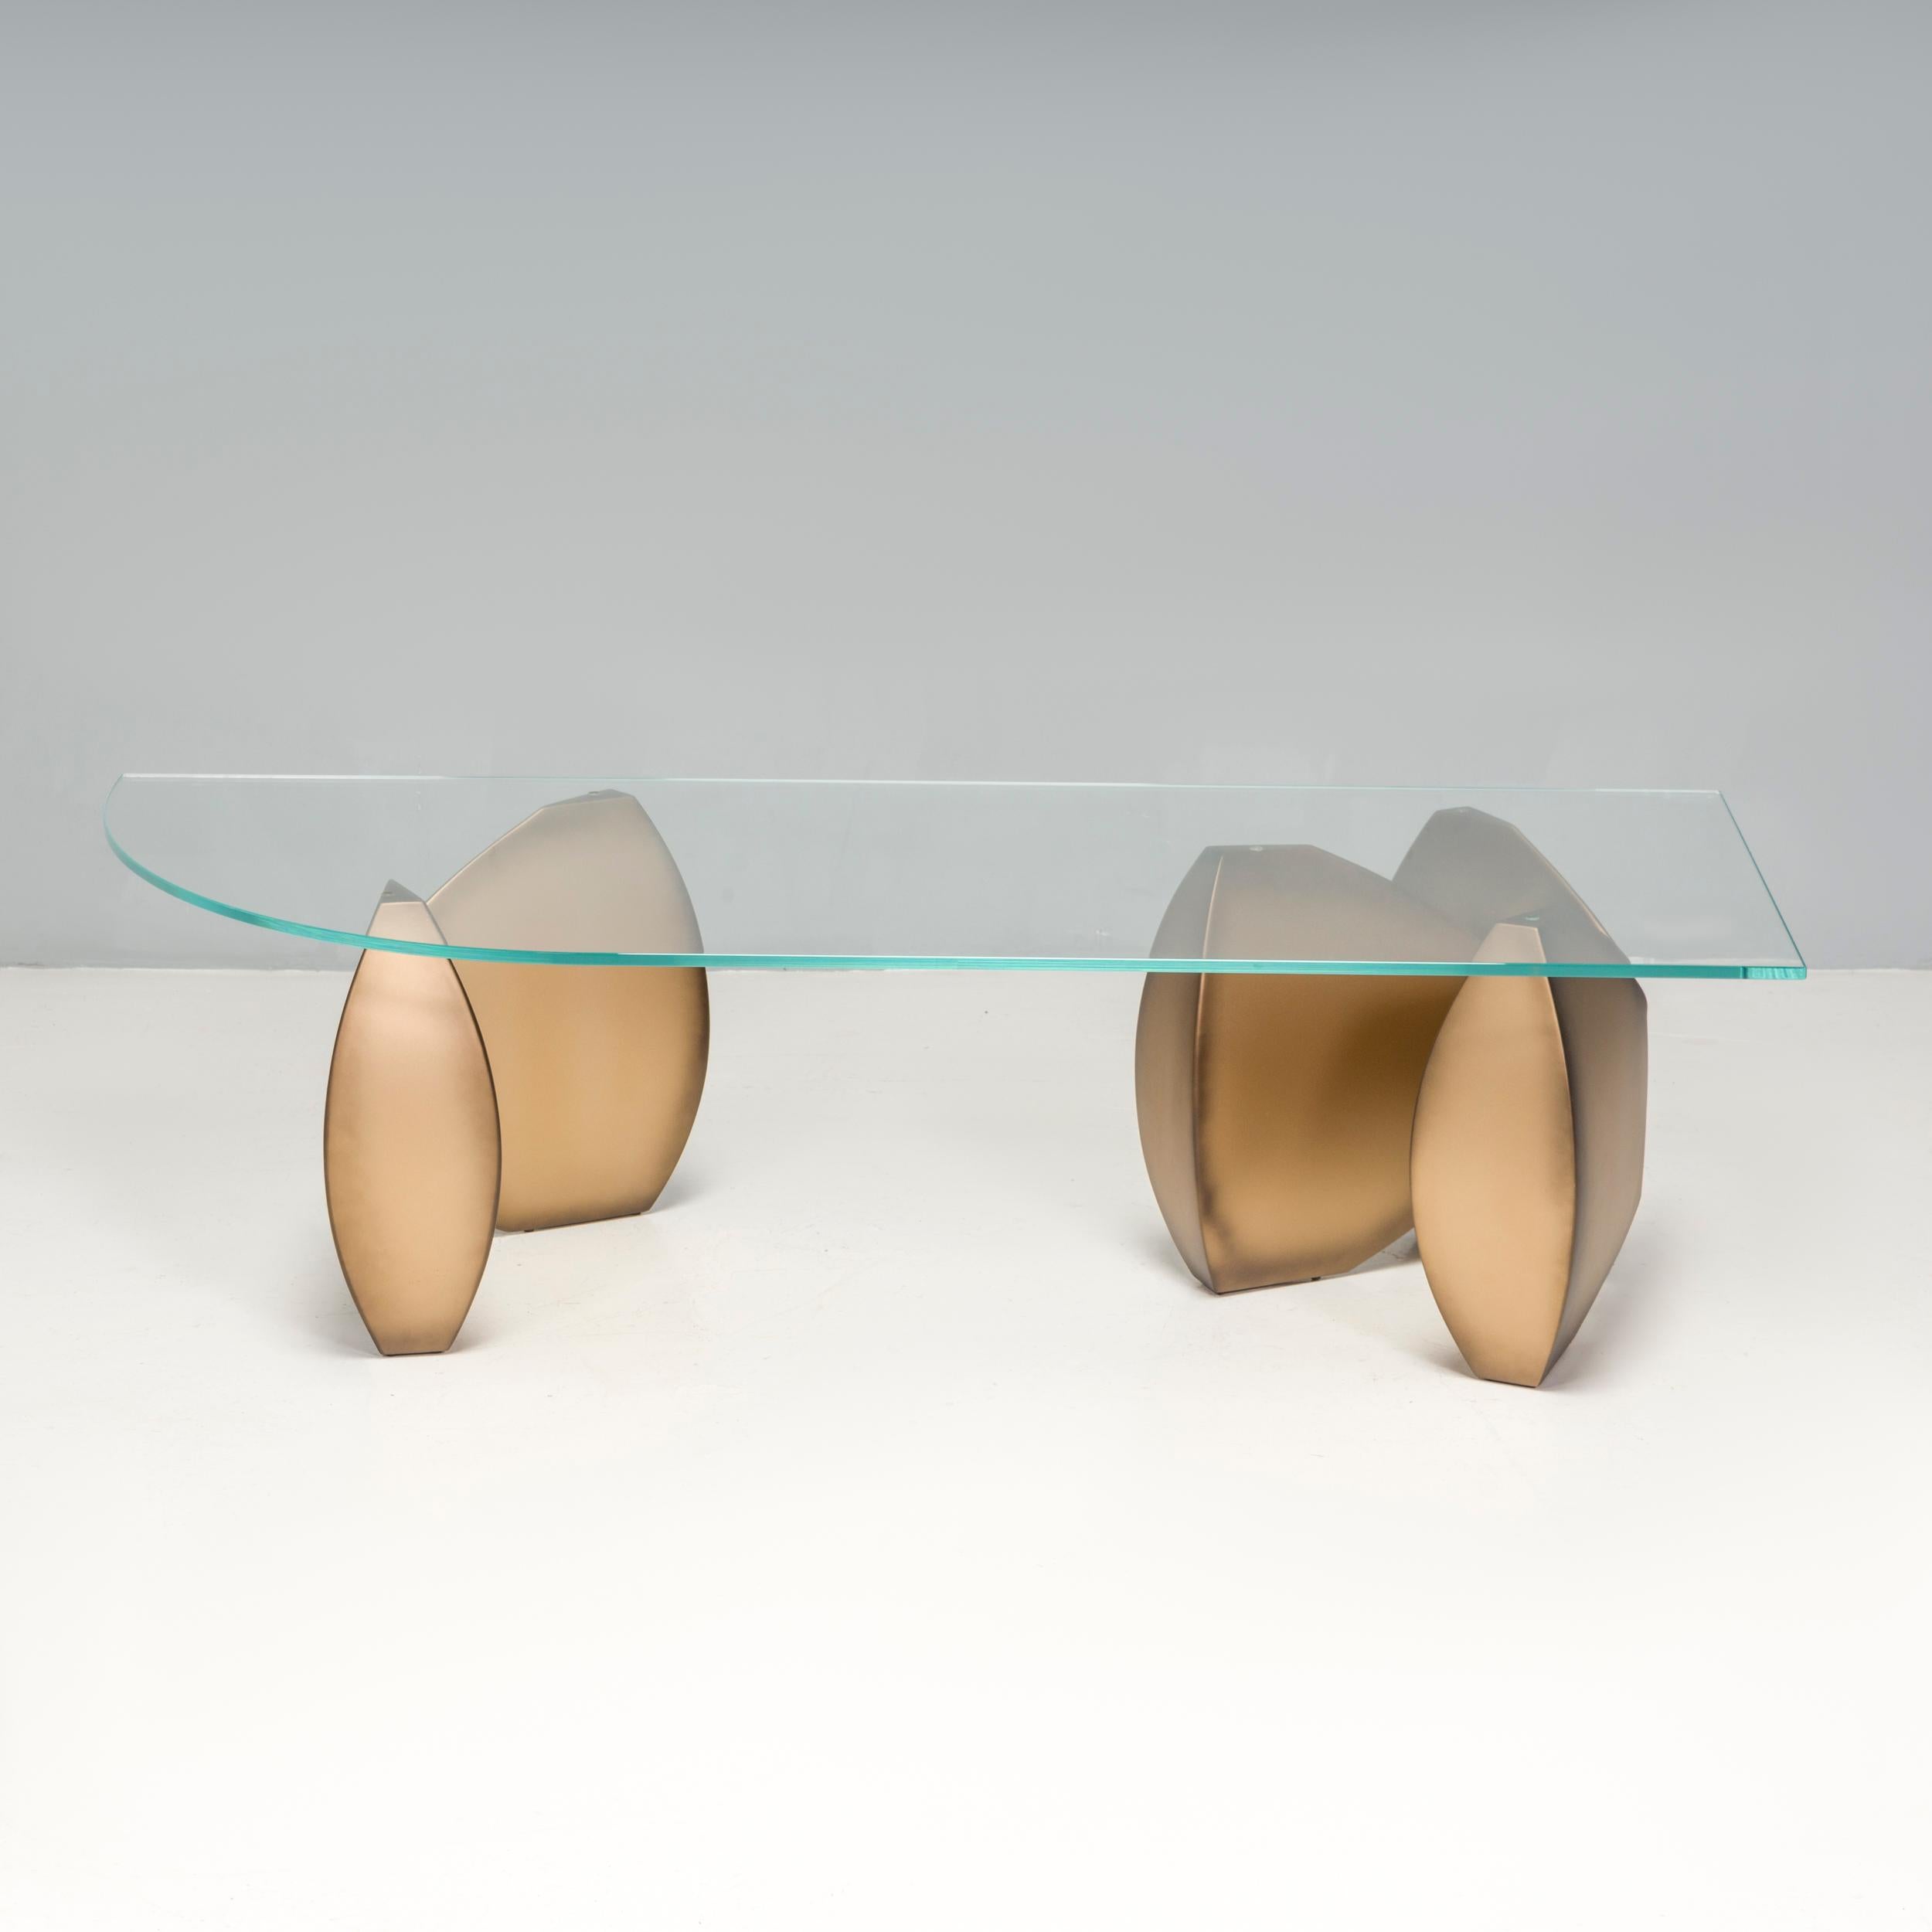 Les meubles Evan Lewis sont fabriqués à la main, un par un, dans l'atelier Evan Lewis de Chicago, dans l'Illinois.  Fondée en 1991, cette collection de meubles sculpturaux s'inspire de motifs classiques, réadaptés au design contemporain. 

La table